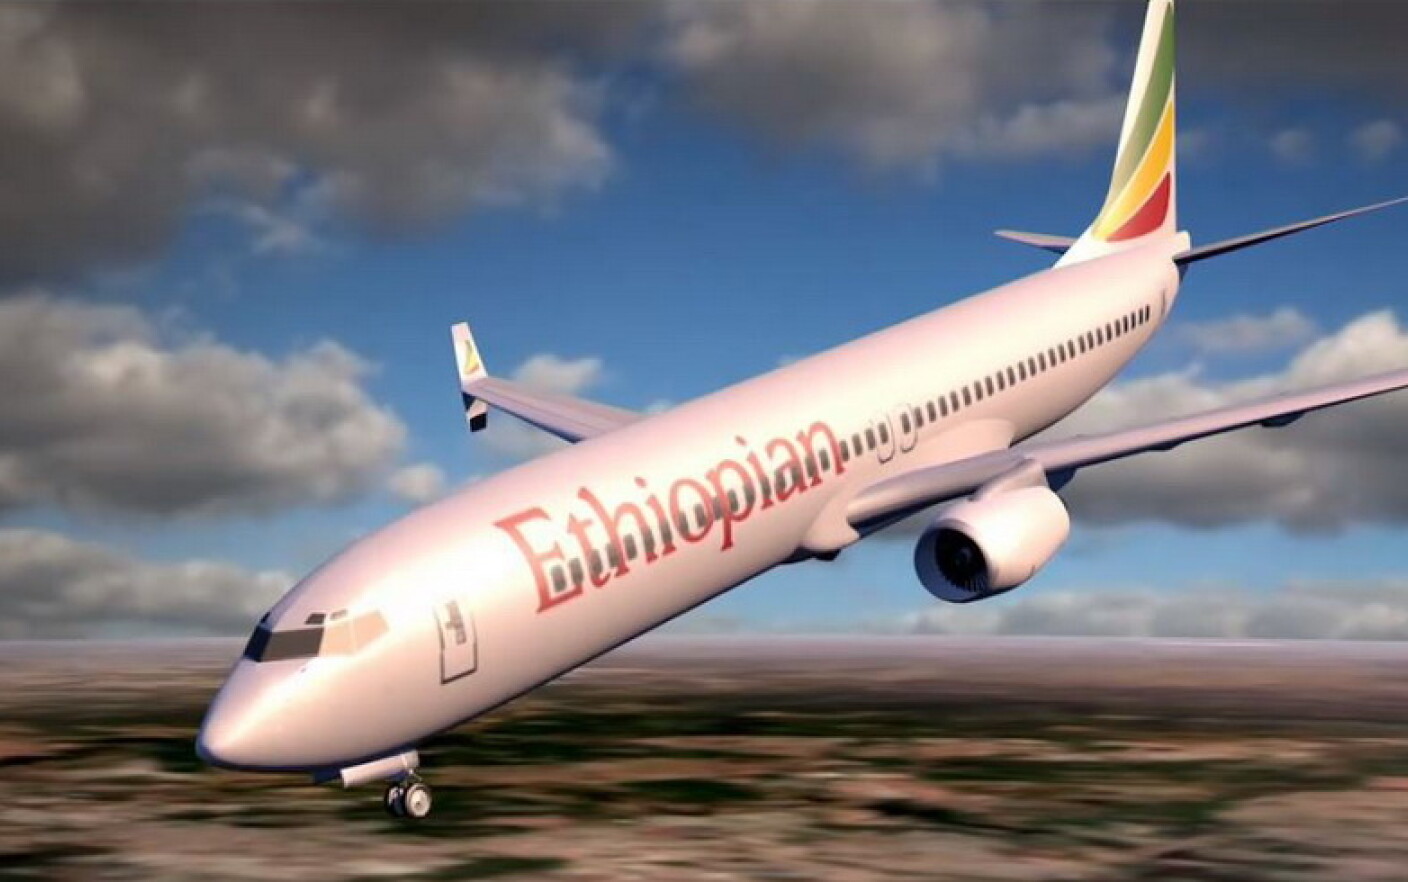 Ce a provocat de fapt prăbușirea avionului Boeing în Etiopia